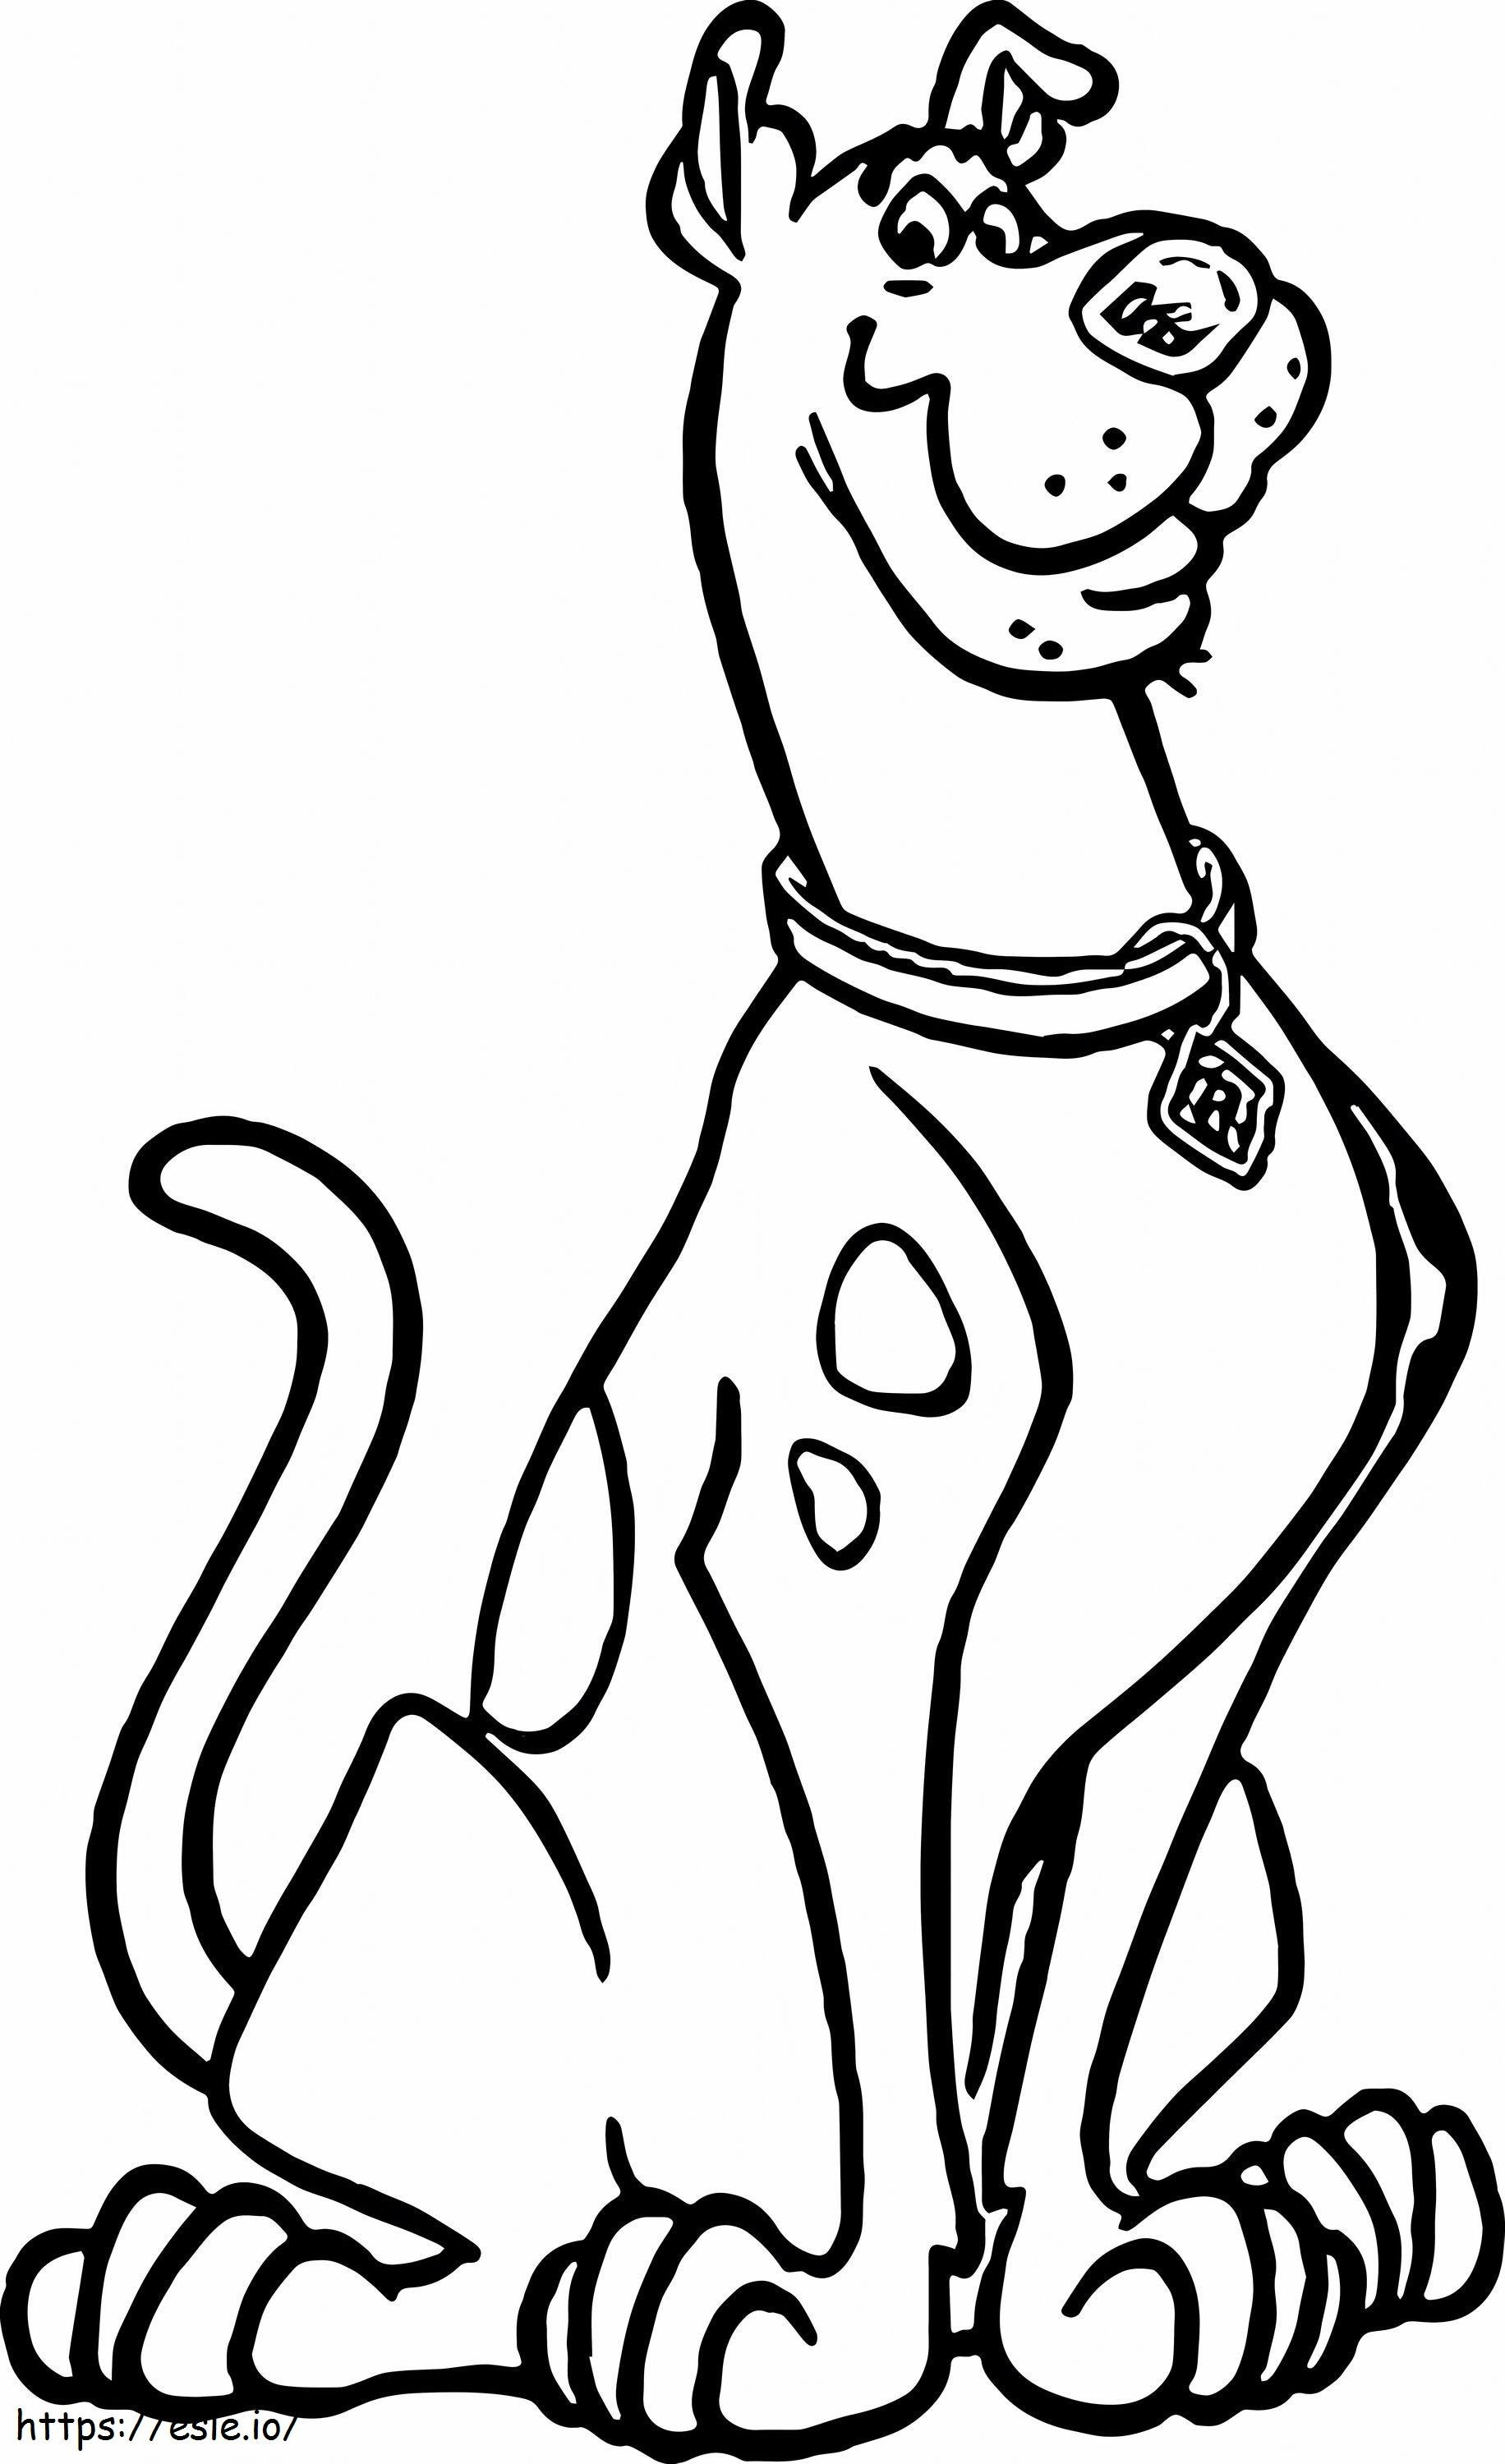  Scooby Doo színező képek nyomtatásra frissen Scooby Doo Scoo Doo rajzfilm rajzoló kutya Scoo Doo Scooby Doo színező képek nyomtatására méretezett 2 kifestő